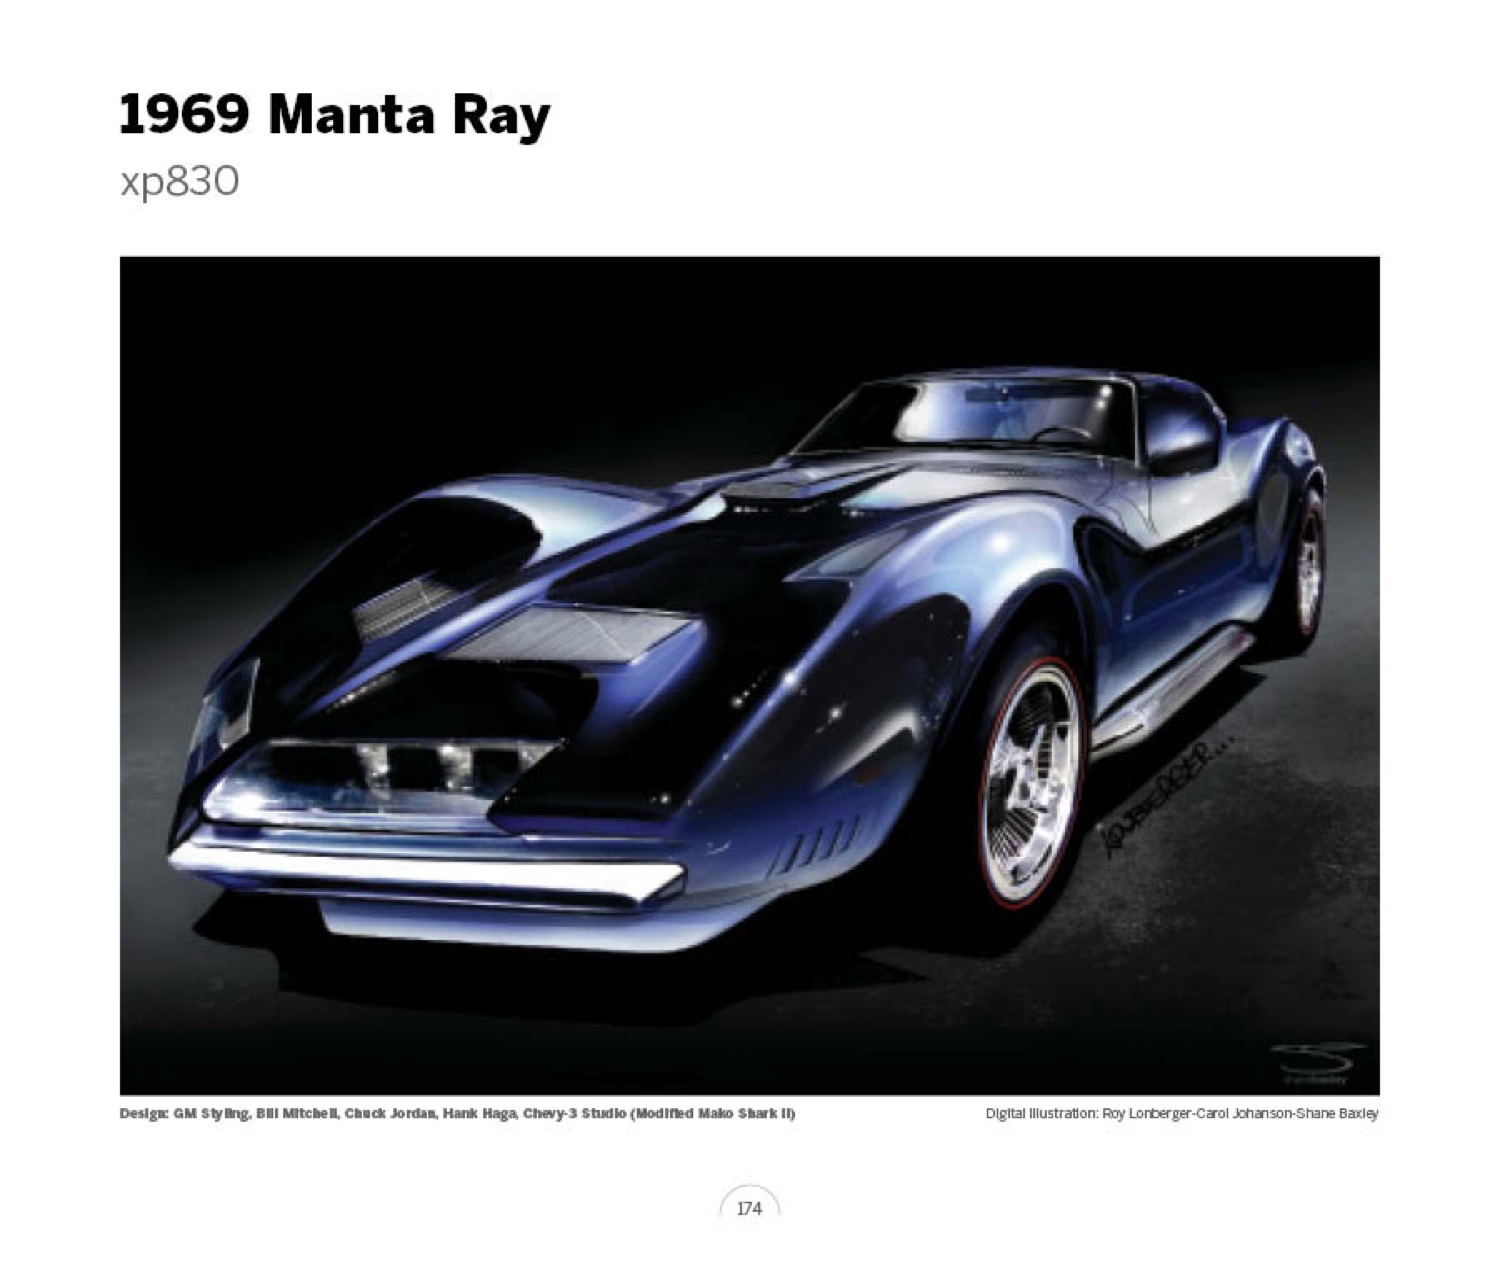 (20) 1969 Manta Ray xp830 LoRez.jpg